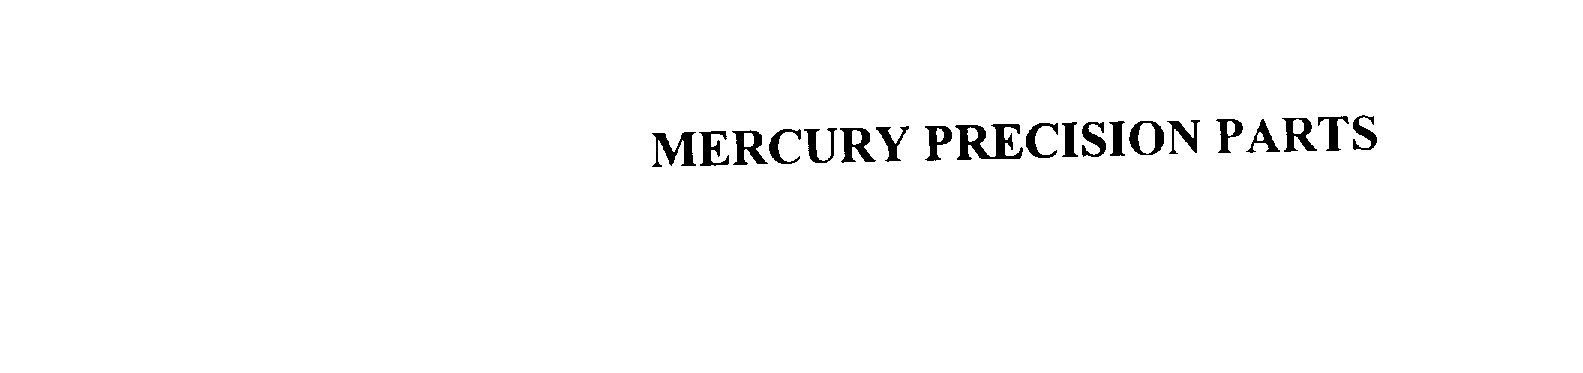  MERCURY PRECISION PARTS